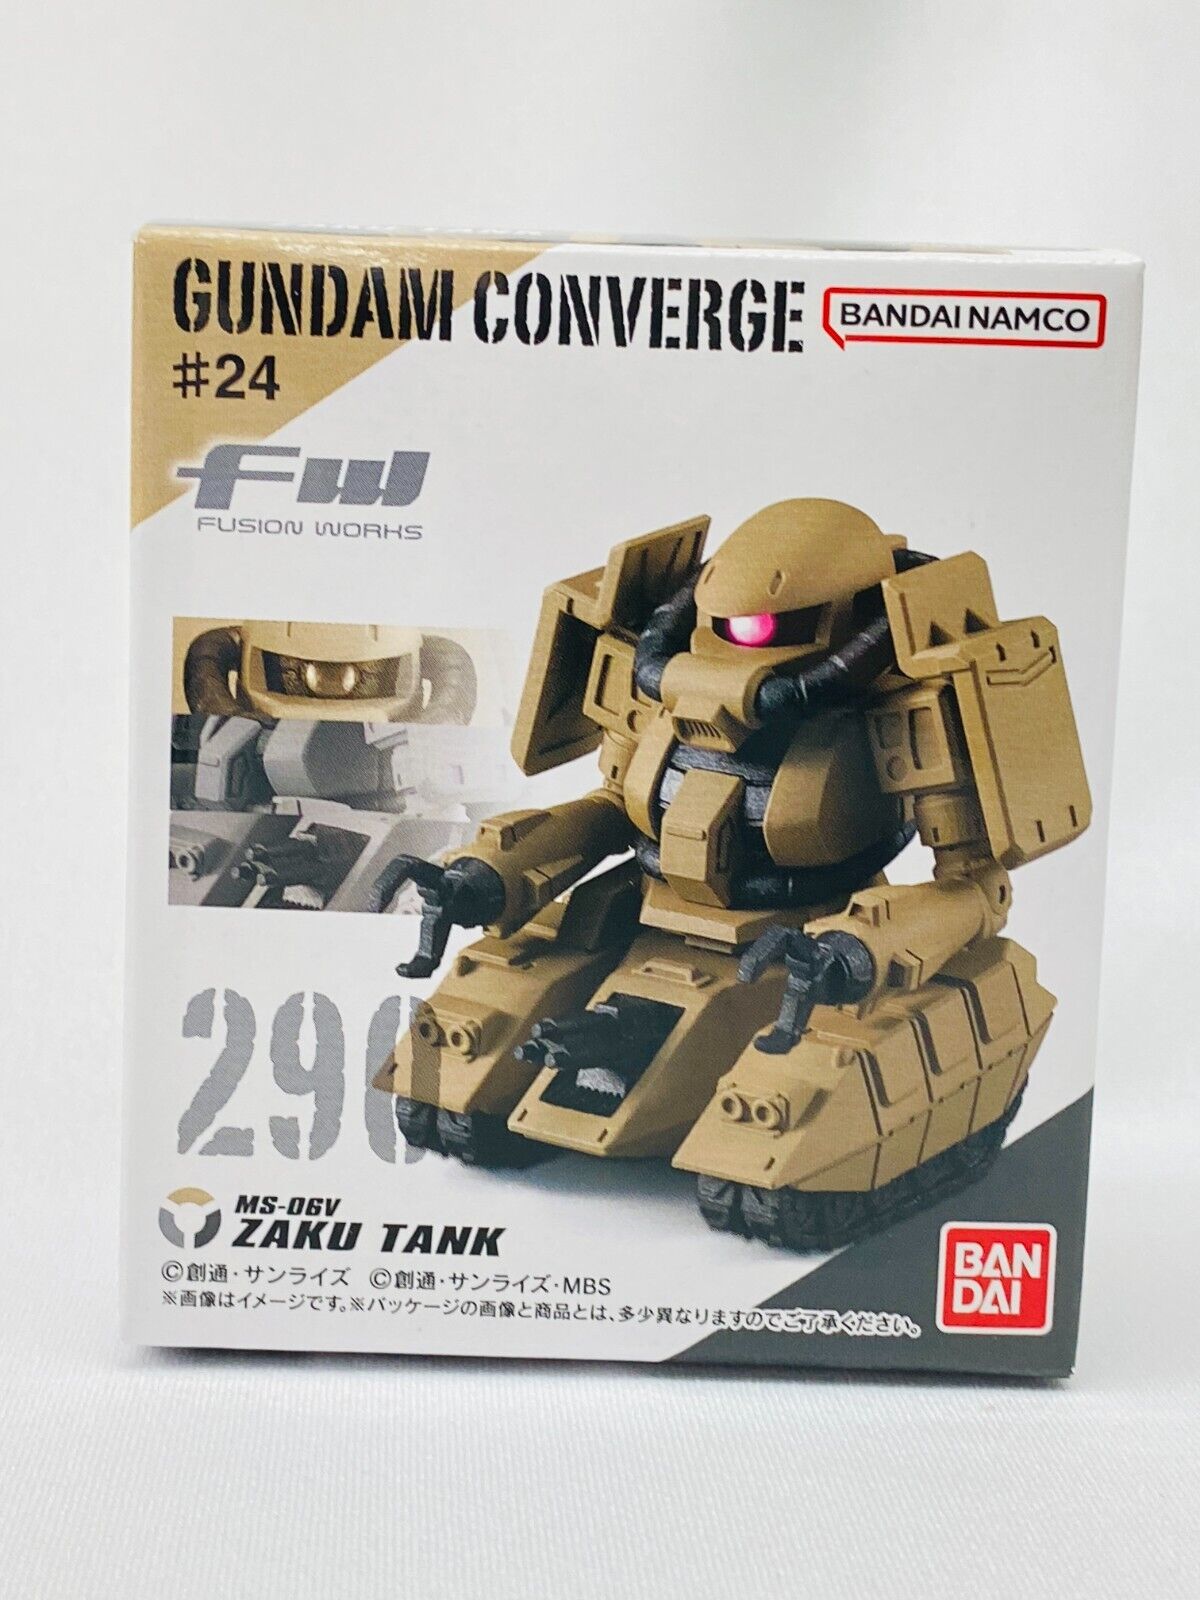 FW GUNDAM CONVERGE #24 / 6. ZAKU TANK / BANDAI Collection Figure toy New